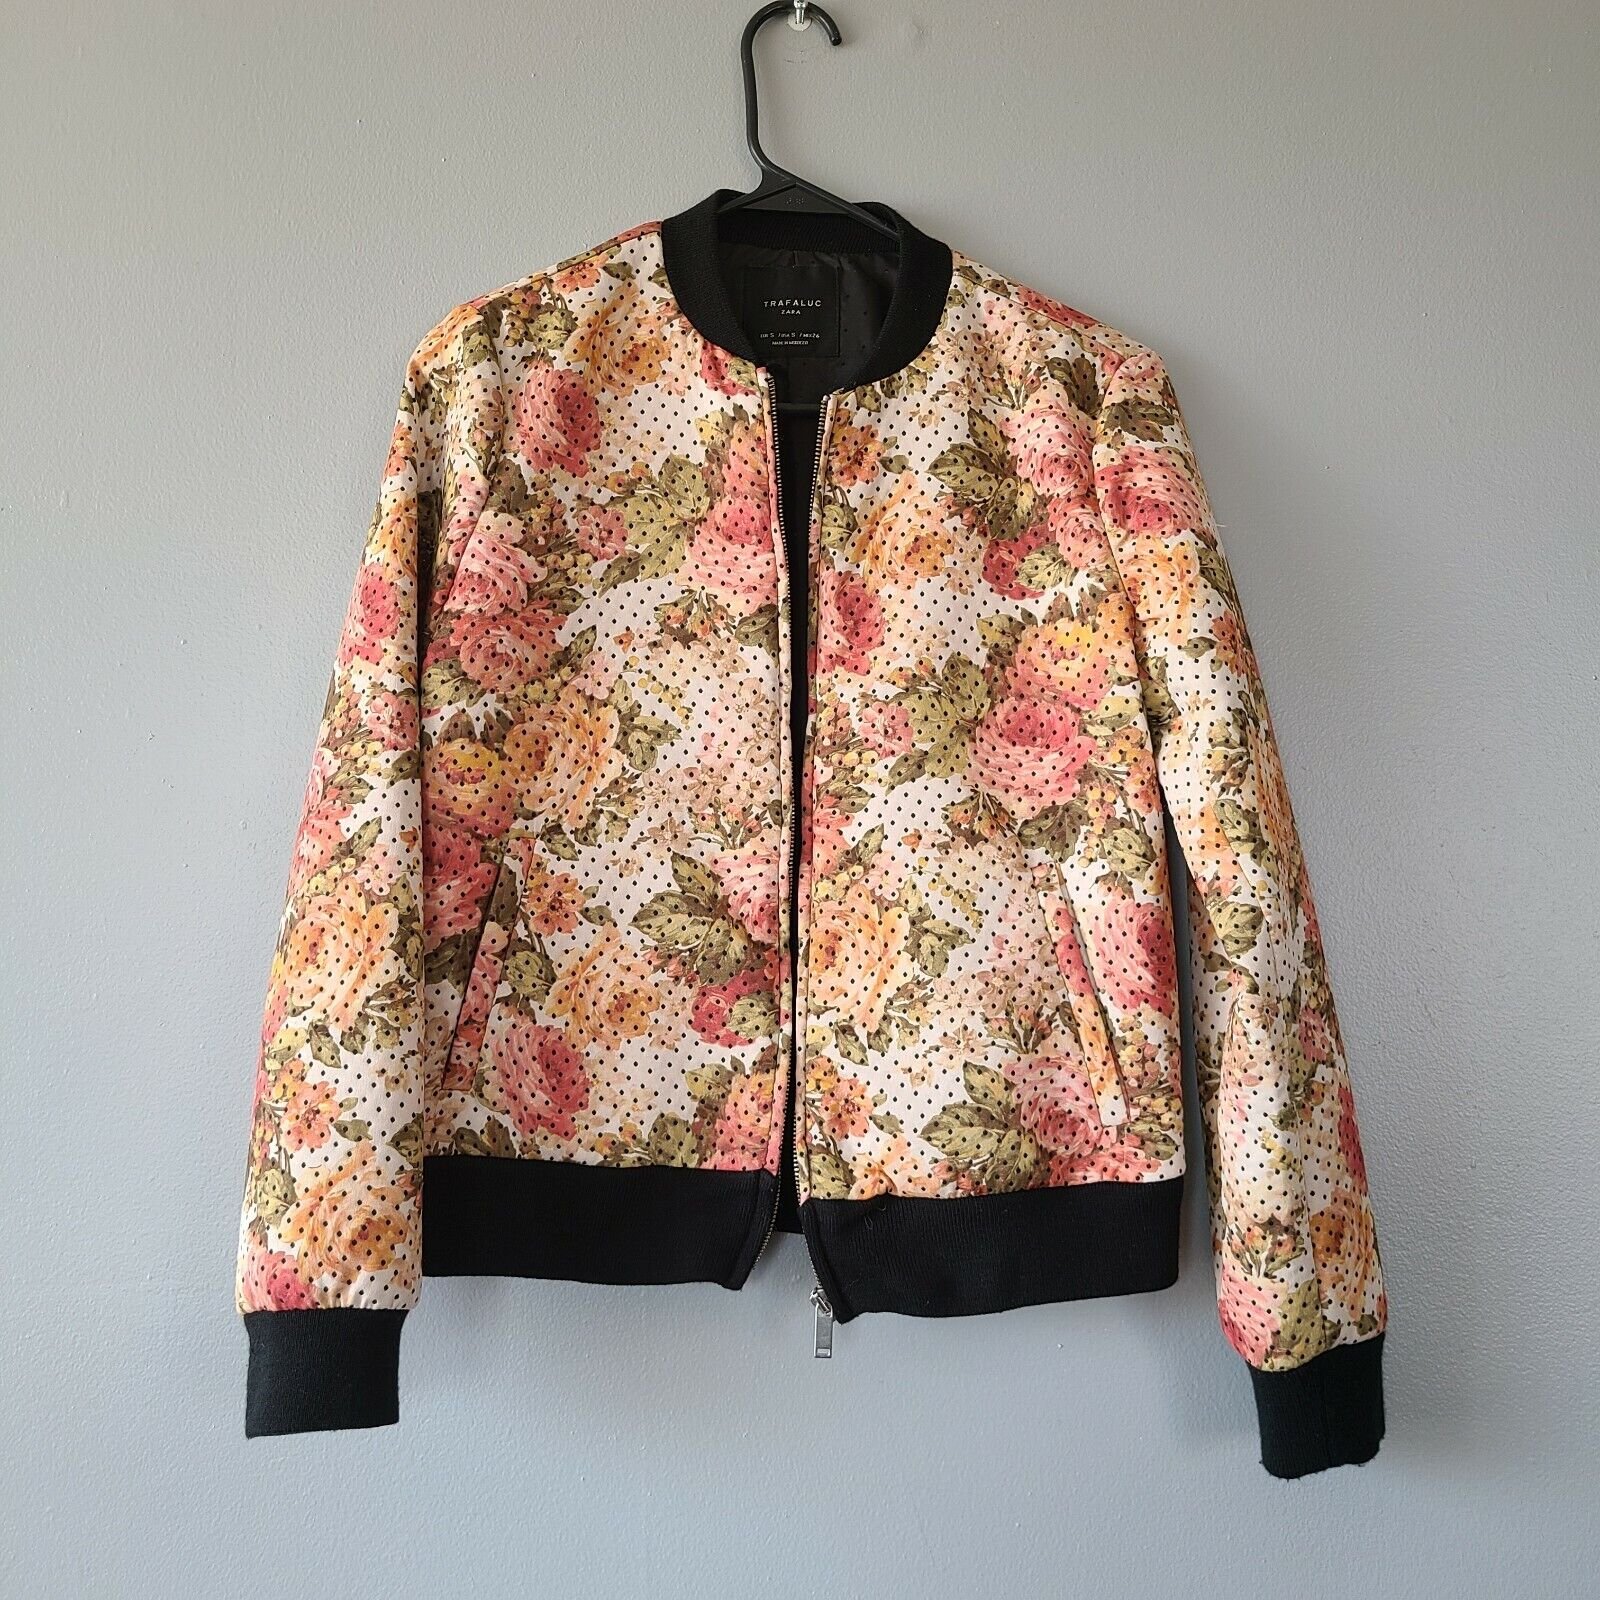 Zara Polka Dot Floral Print Neoprene Bomber Jacket.jpg